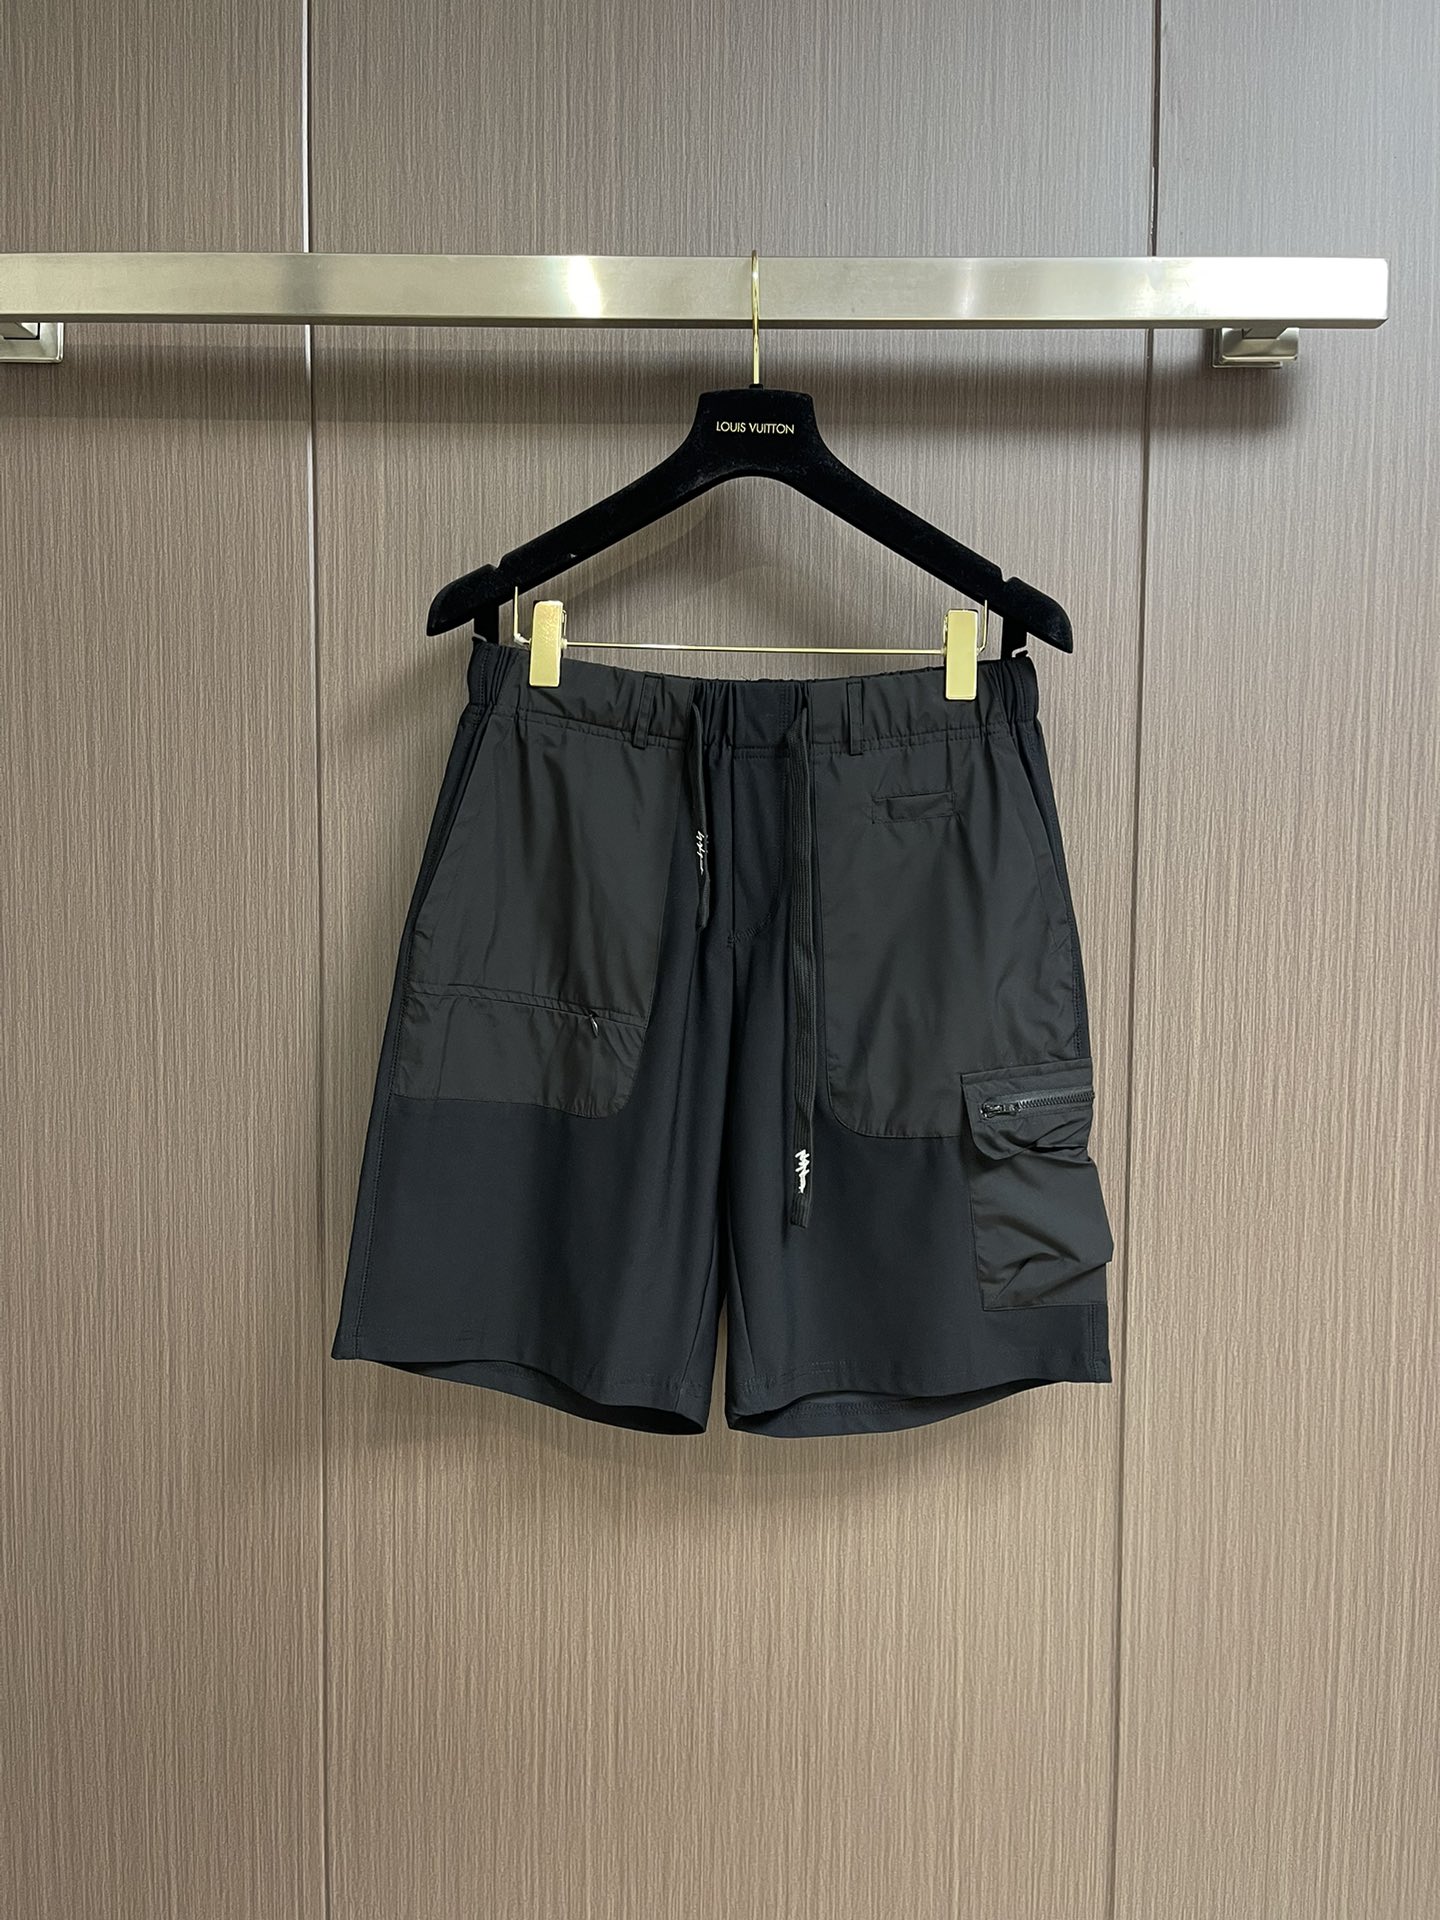 Y3高街休闲五分裤立体剪裁运动短裤其实对于Y-3来说暗黑是他们最主要的设计元素之一也是其招牌性的系列对于